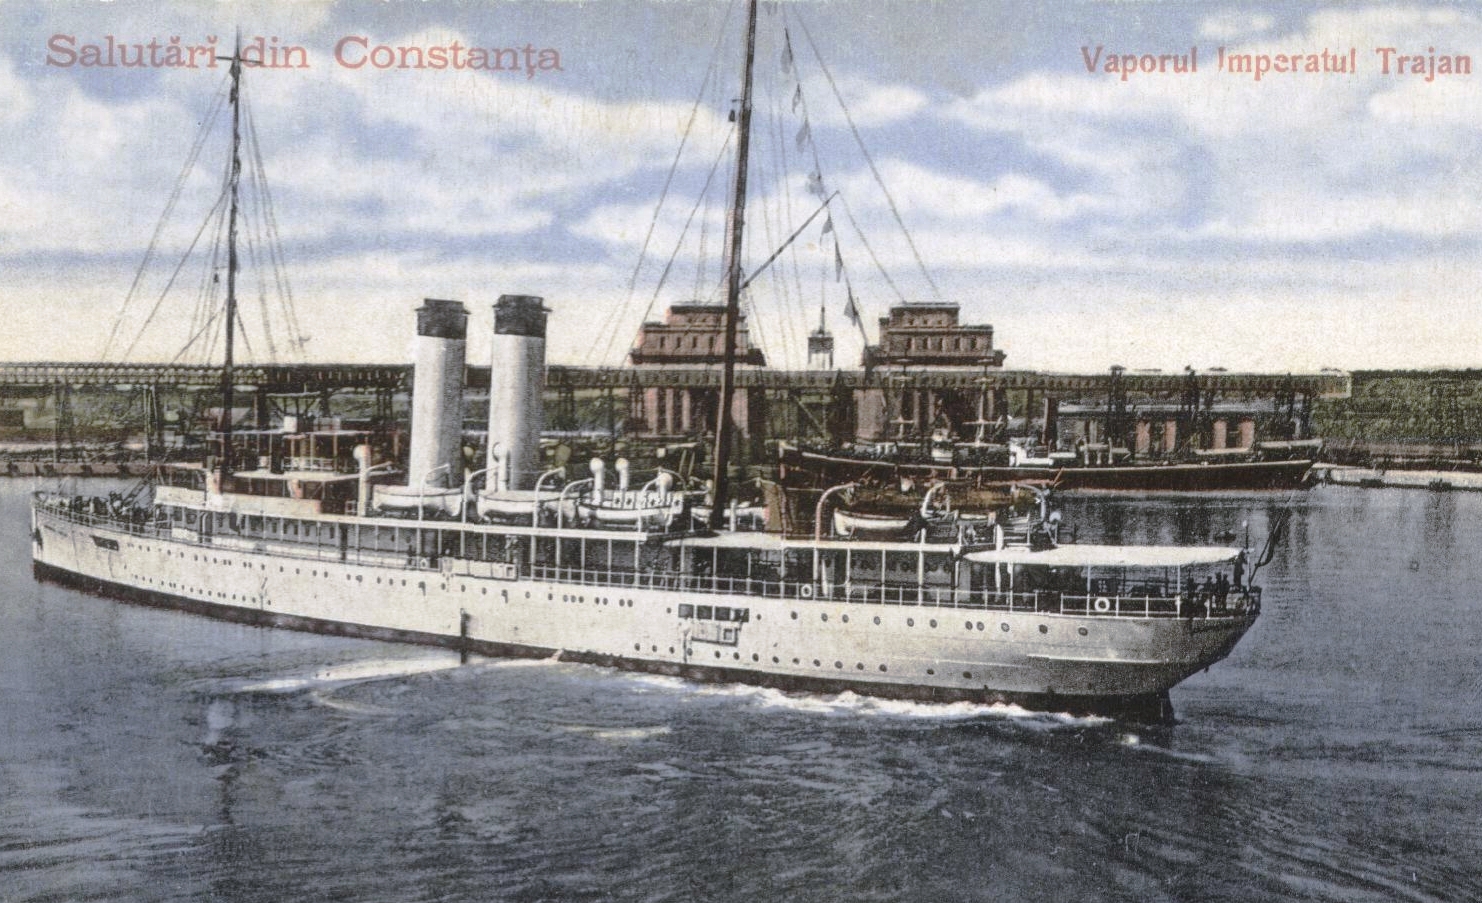 Nava ÎMPĂRATUL TRAIAN, în anul 1919, în timpul unor manevre efectuate în bazinul vechi al portului Constanța.